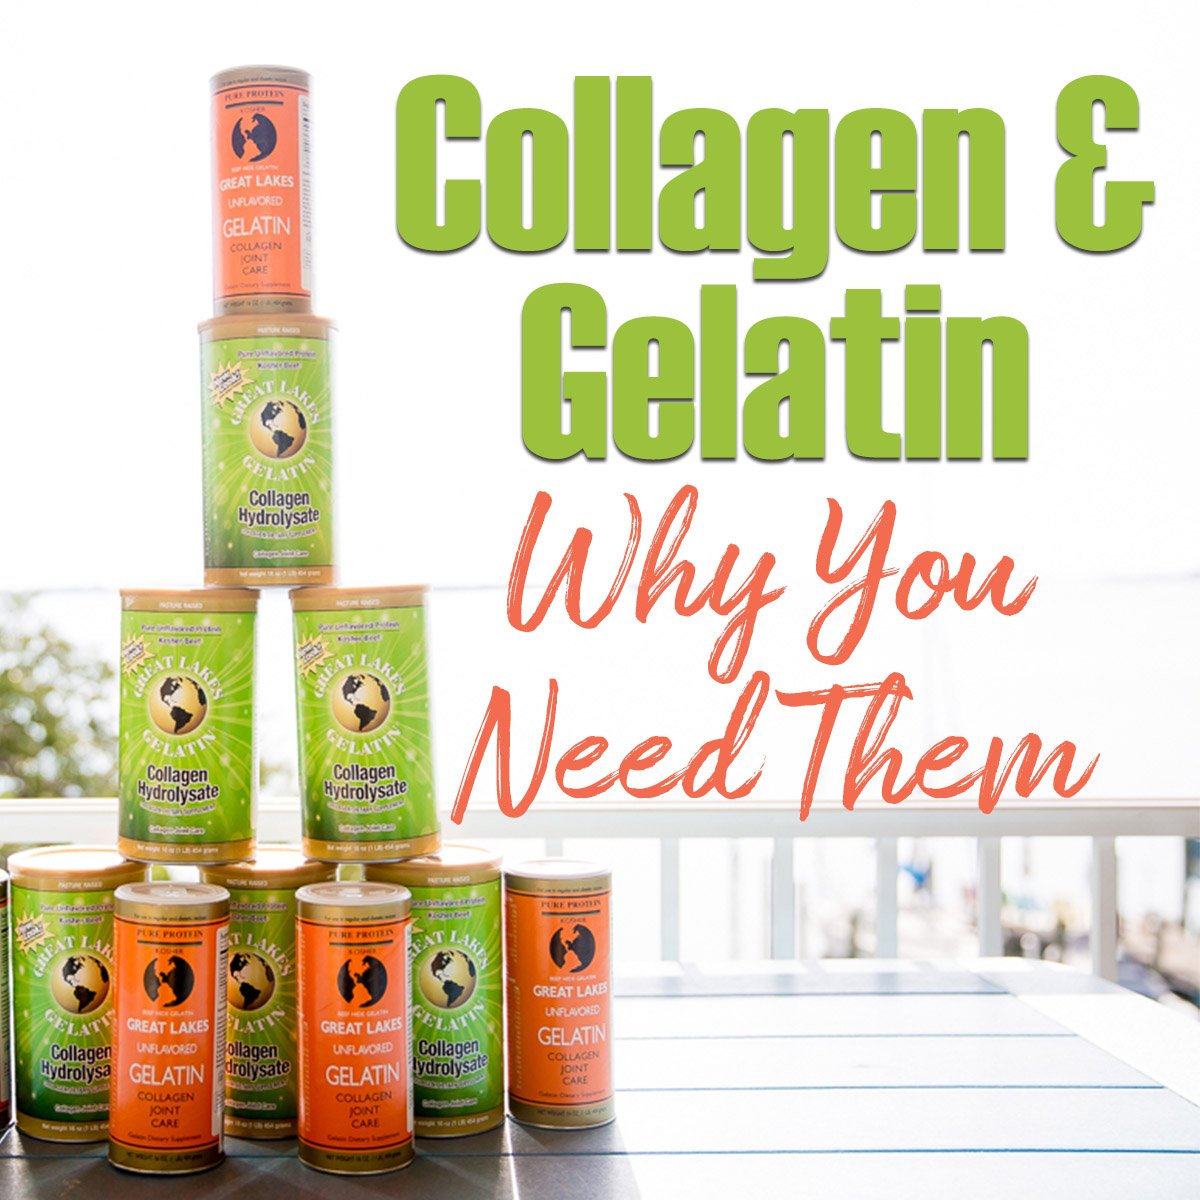 collagen vs gelatin thm